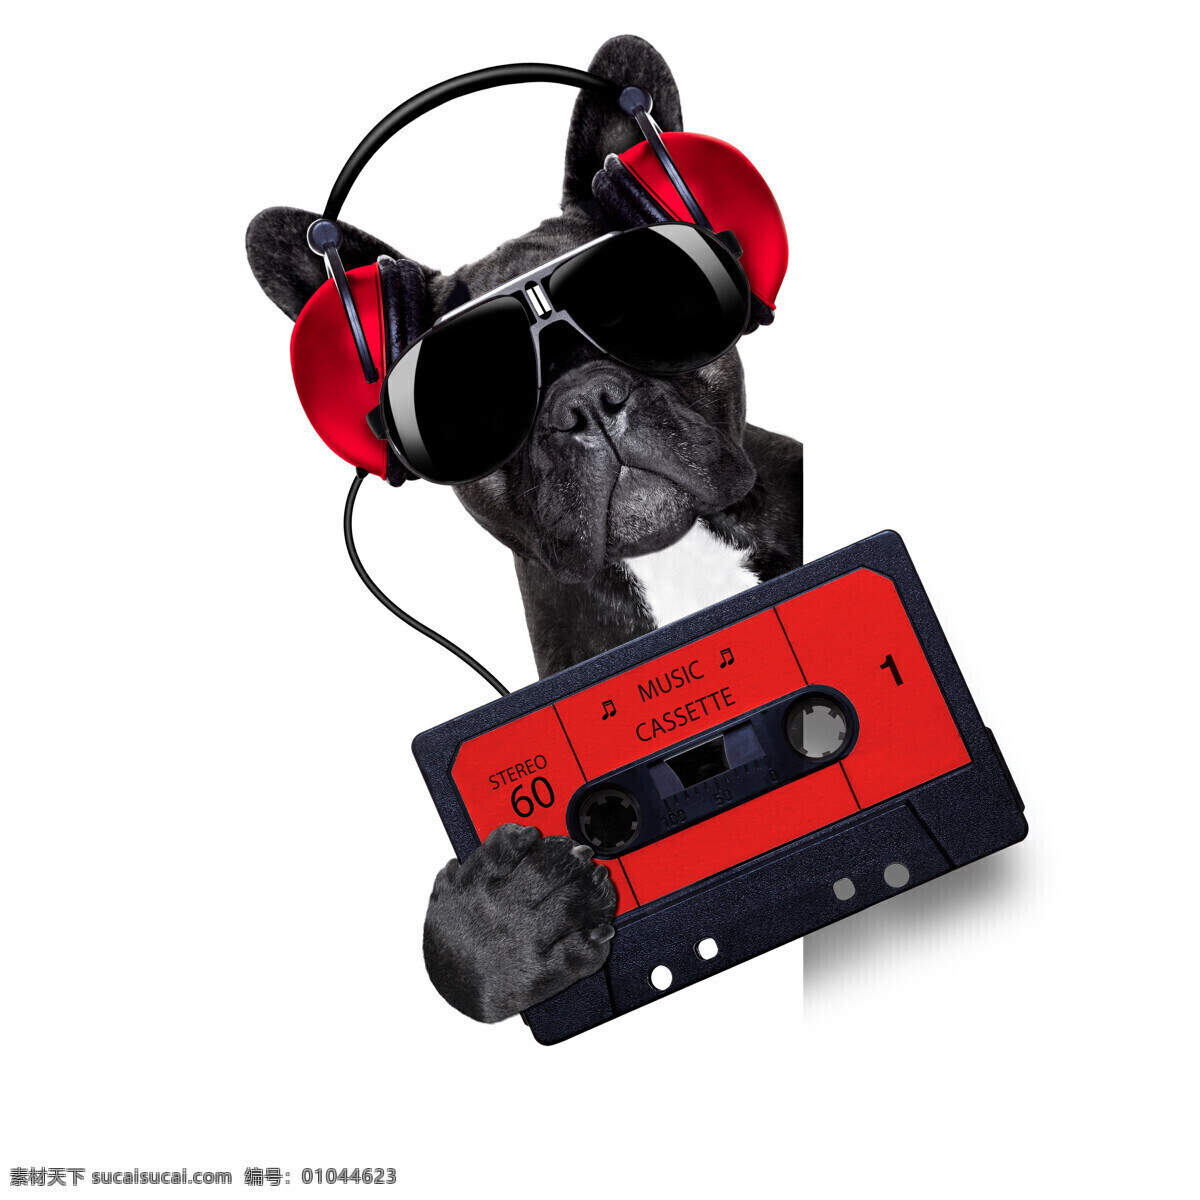 磁带 狗 音乐 耳机 宠物 动物 狗狗图片 生物世界